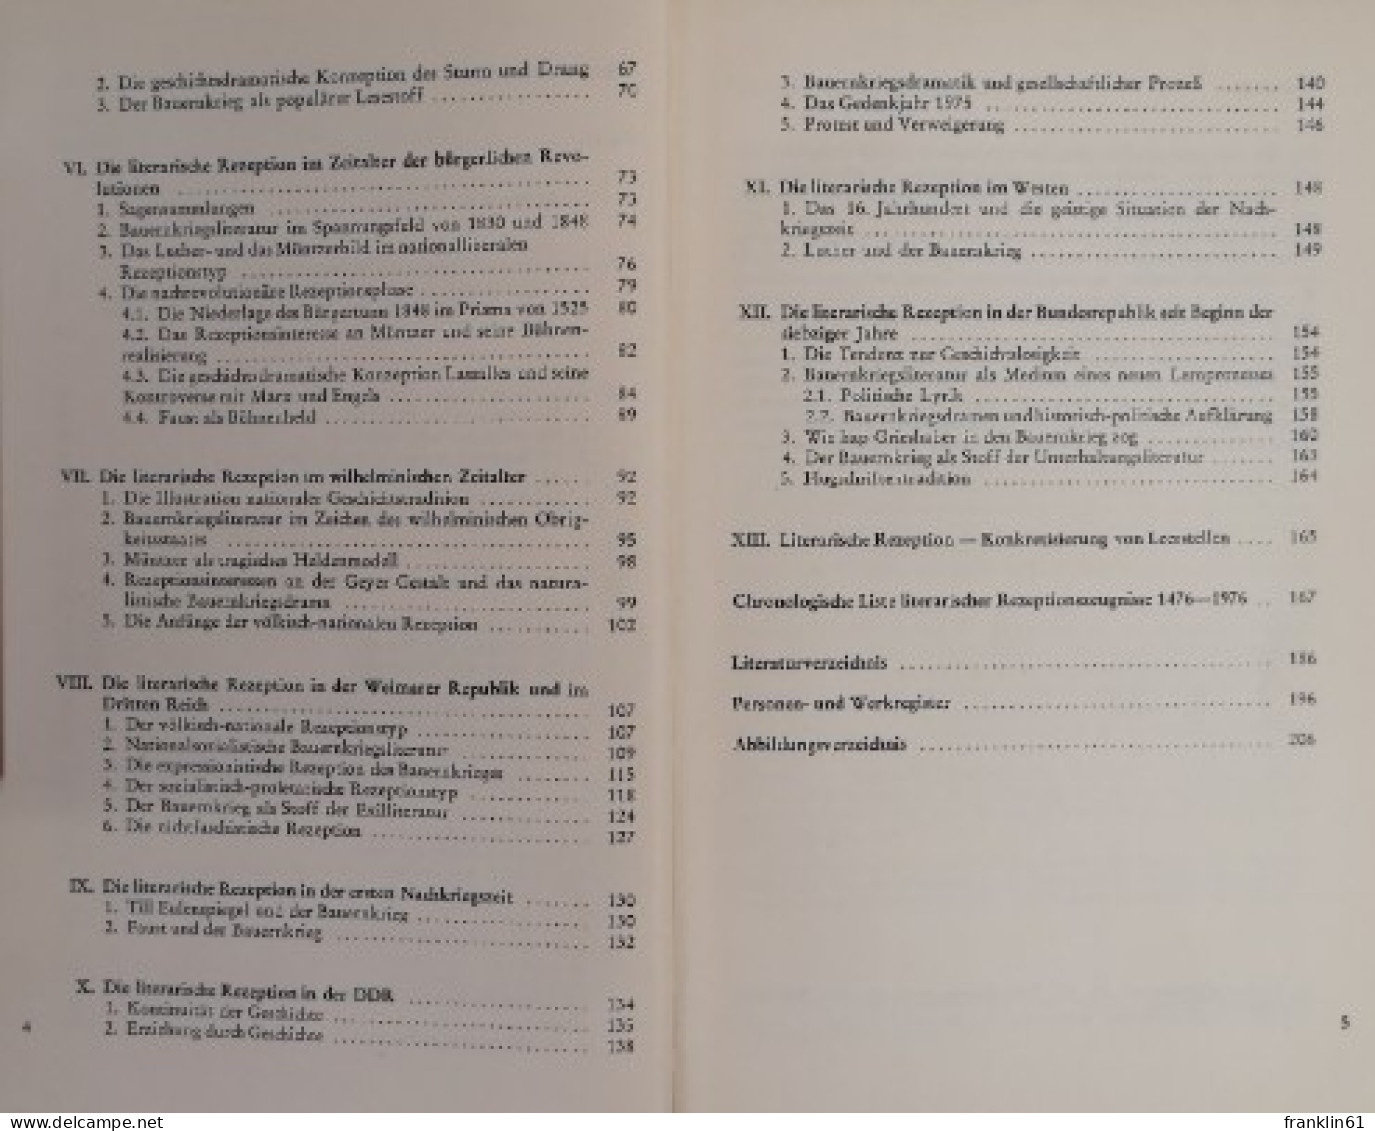 Die Spur Des Bundschuhs. Der Deutsche Bauernkrieg In Der Literatur 1476 - 1976. - 4. 1789-1914